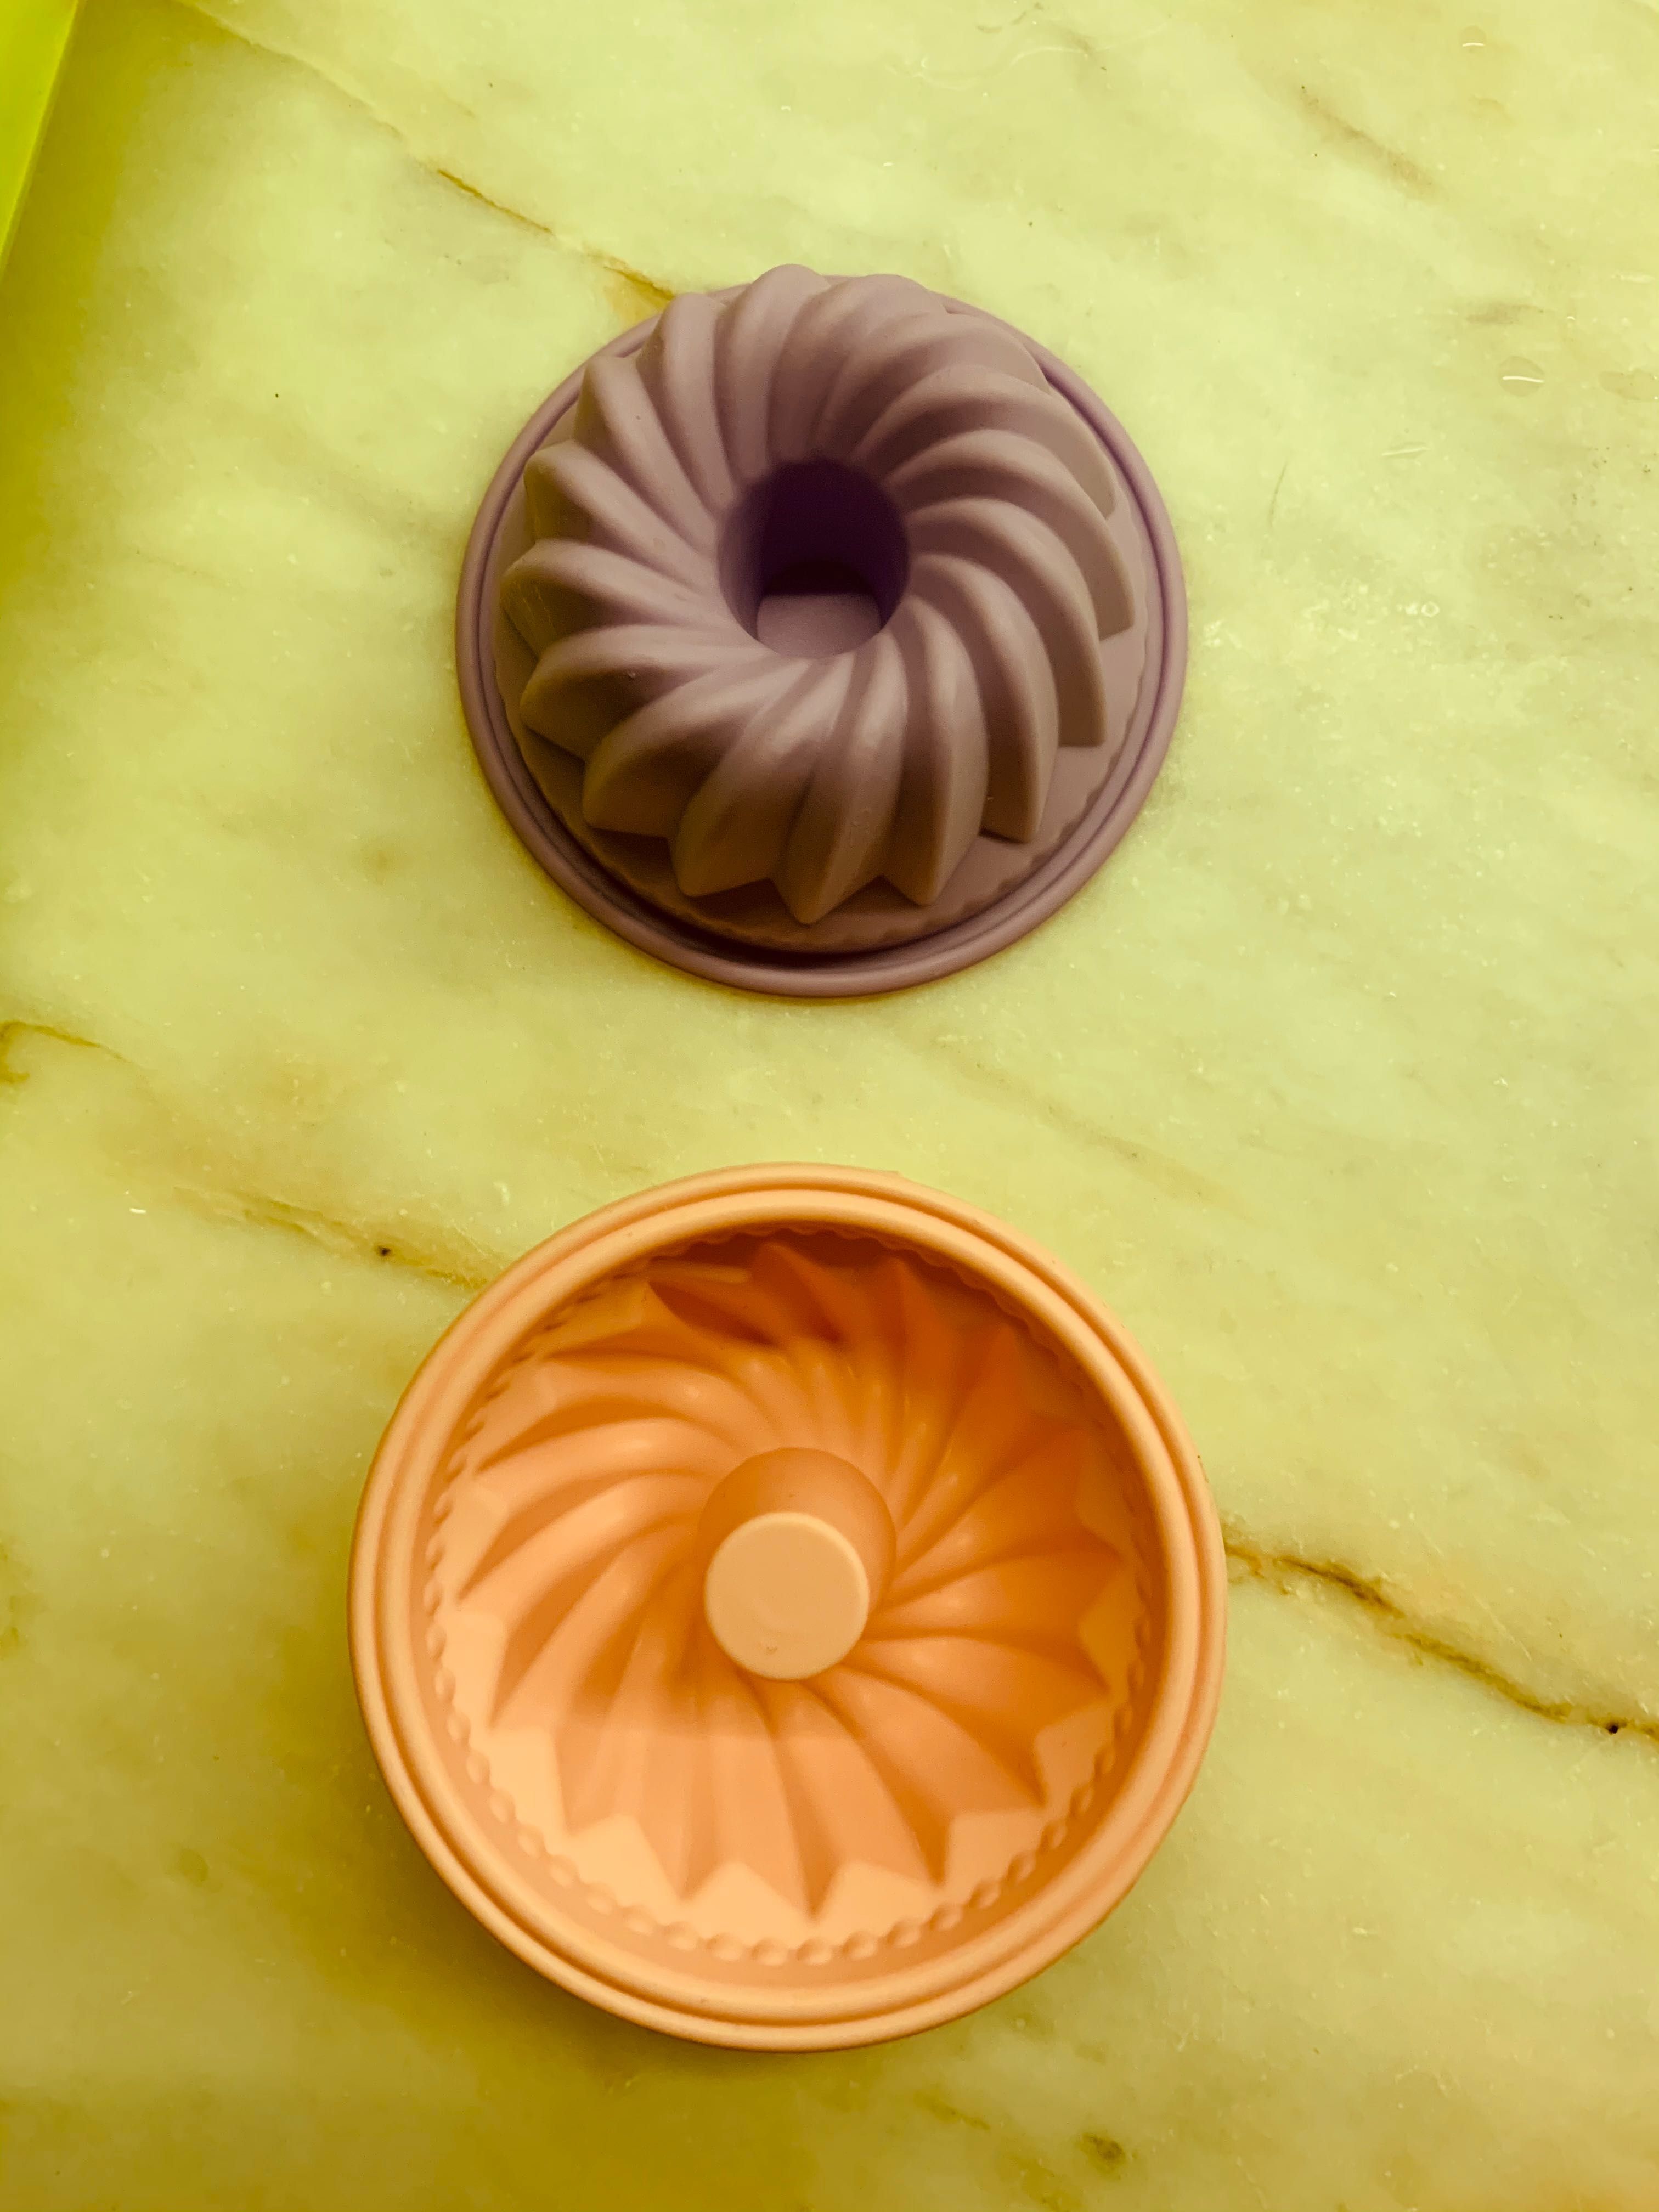 Formas de silicone para muffins